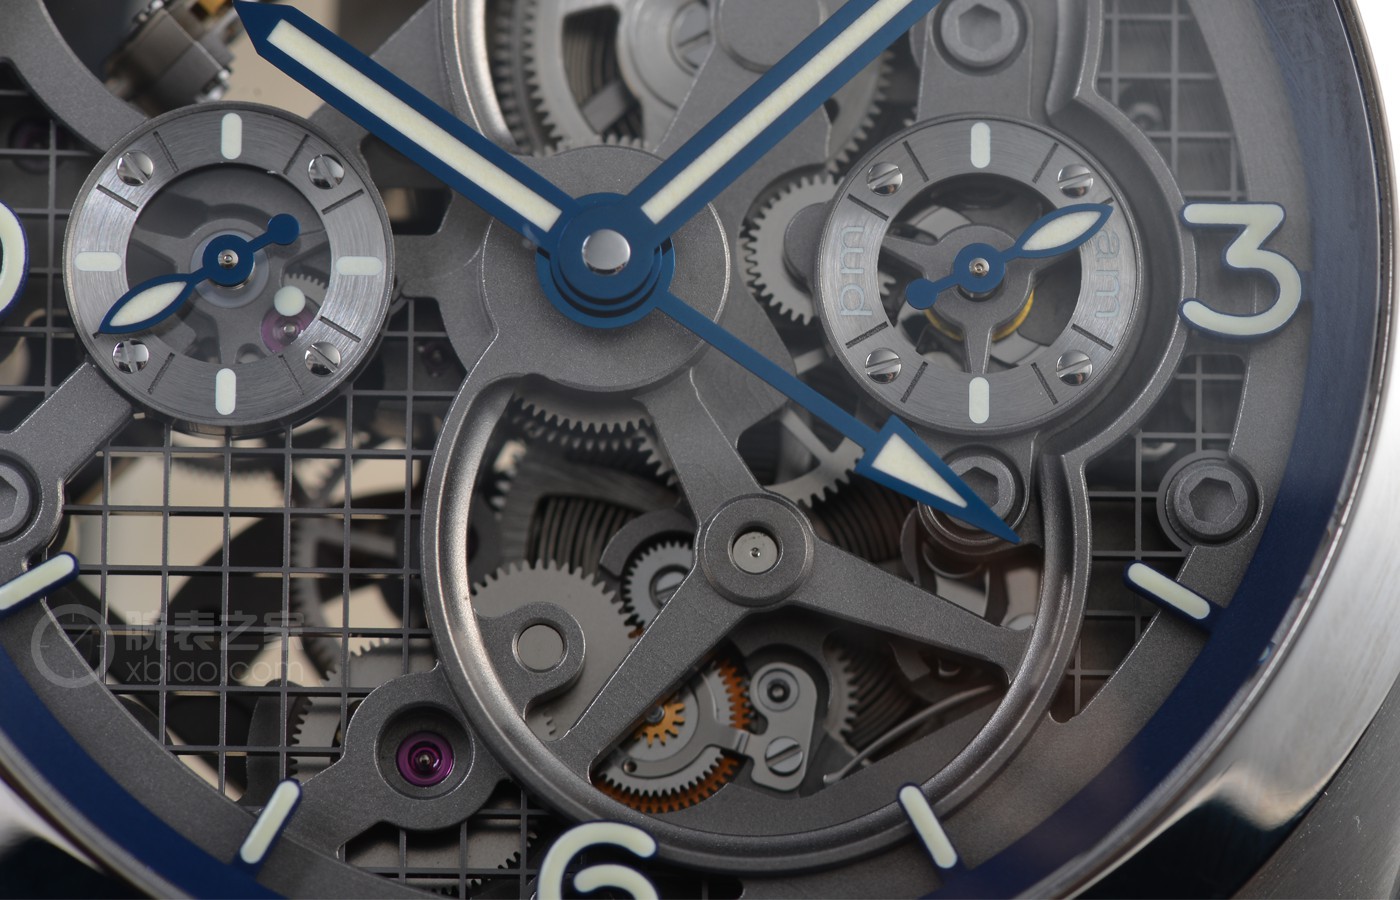 寇如林]机械设备巨型 品评沛纳海LUMINOR系列产品GMT腕表